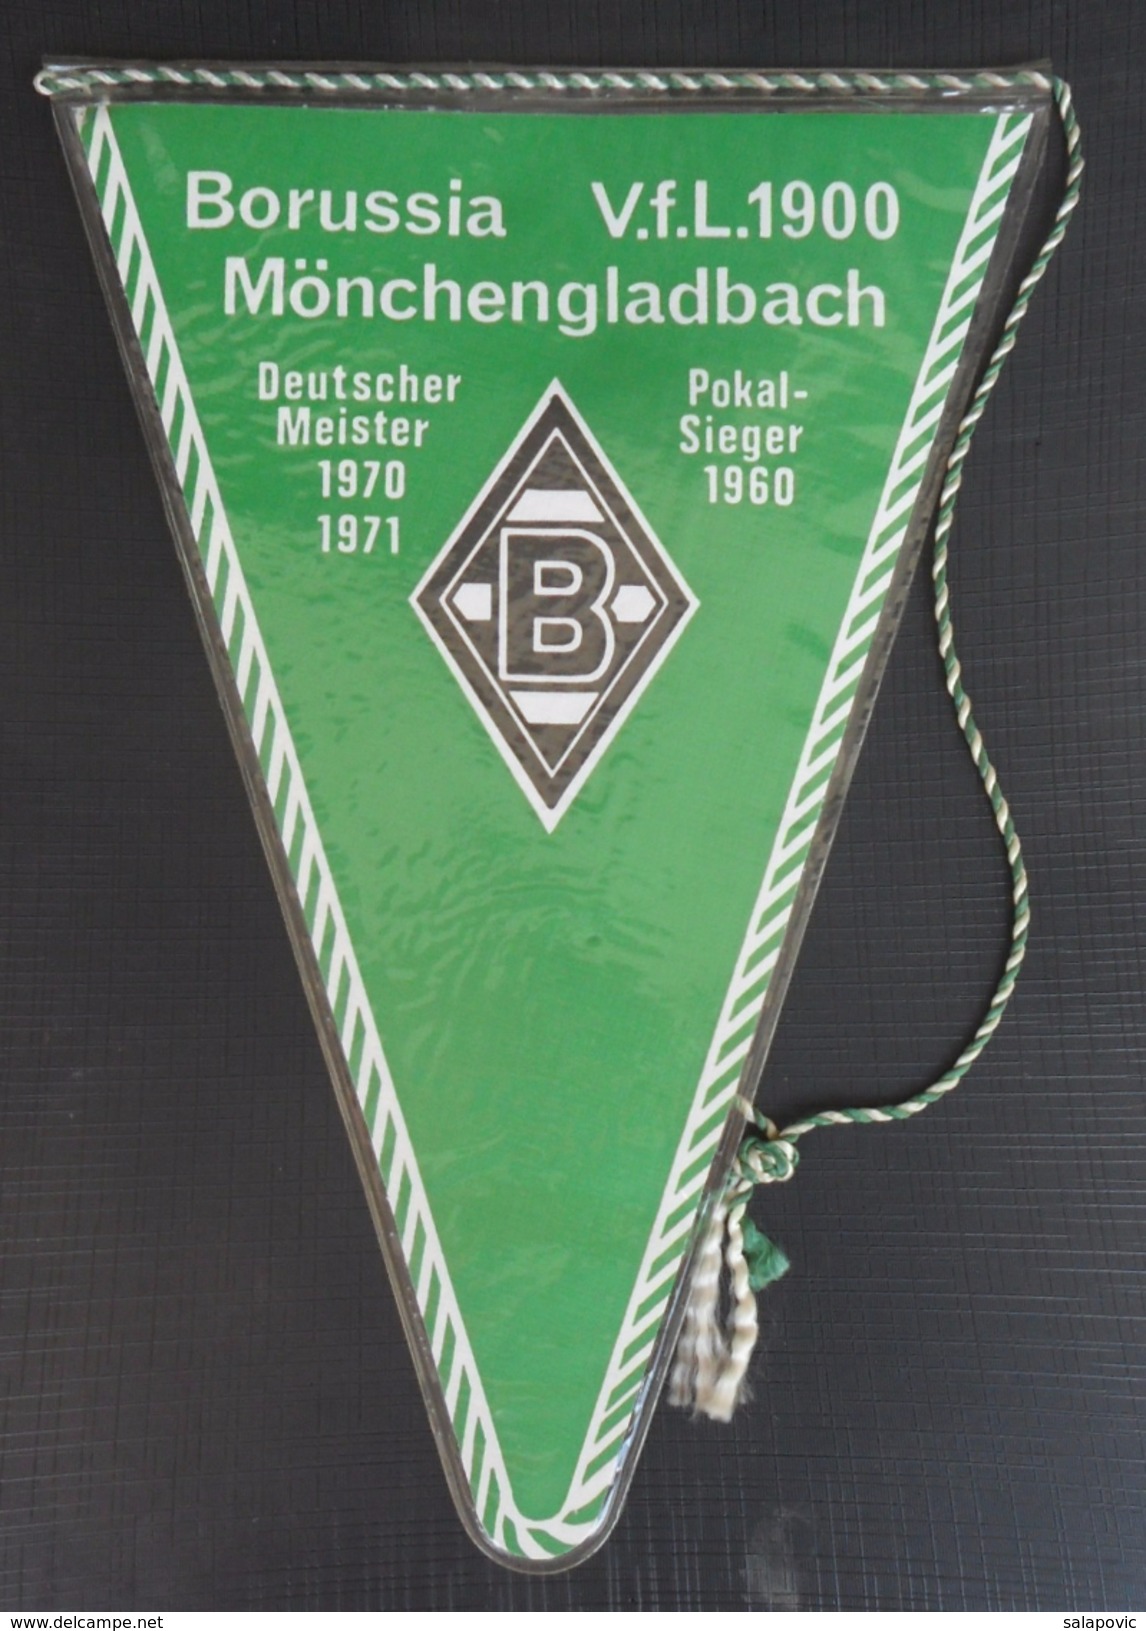 Borussia Mönchengladbach GERMANY  FOOTBALL CLUB, SOCCER / FUTBOL / CALCIO, OLD PENNANT, SPORTS FLAG - Bekleidung, Souvenirs Und Sonstige